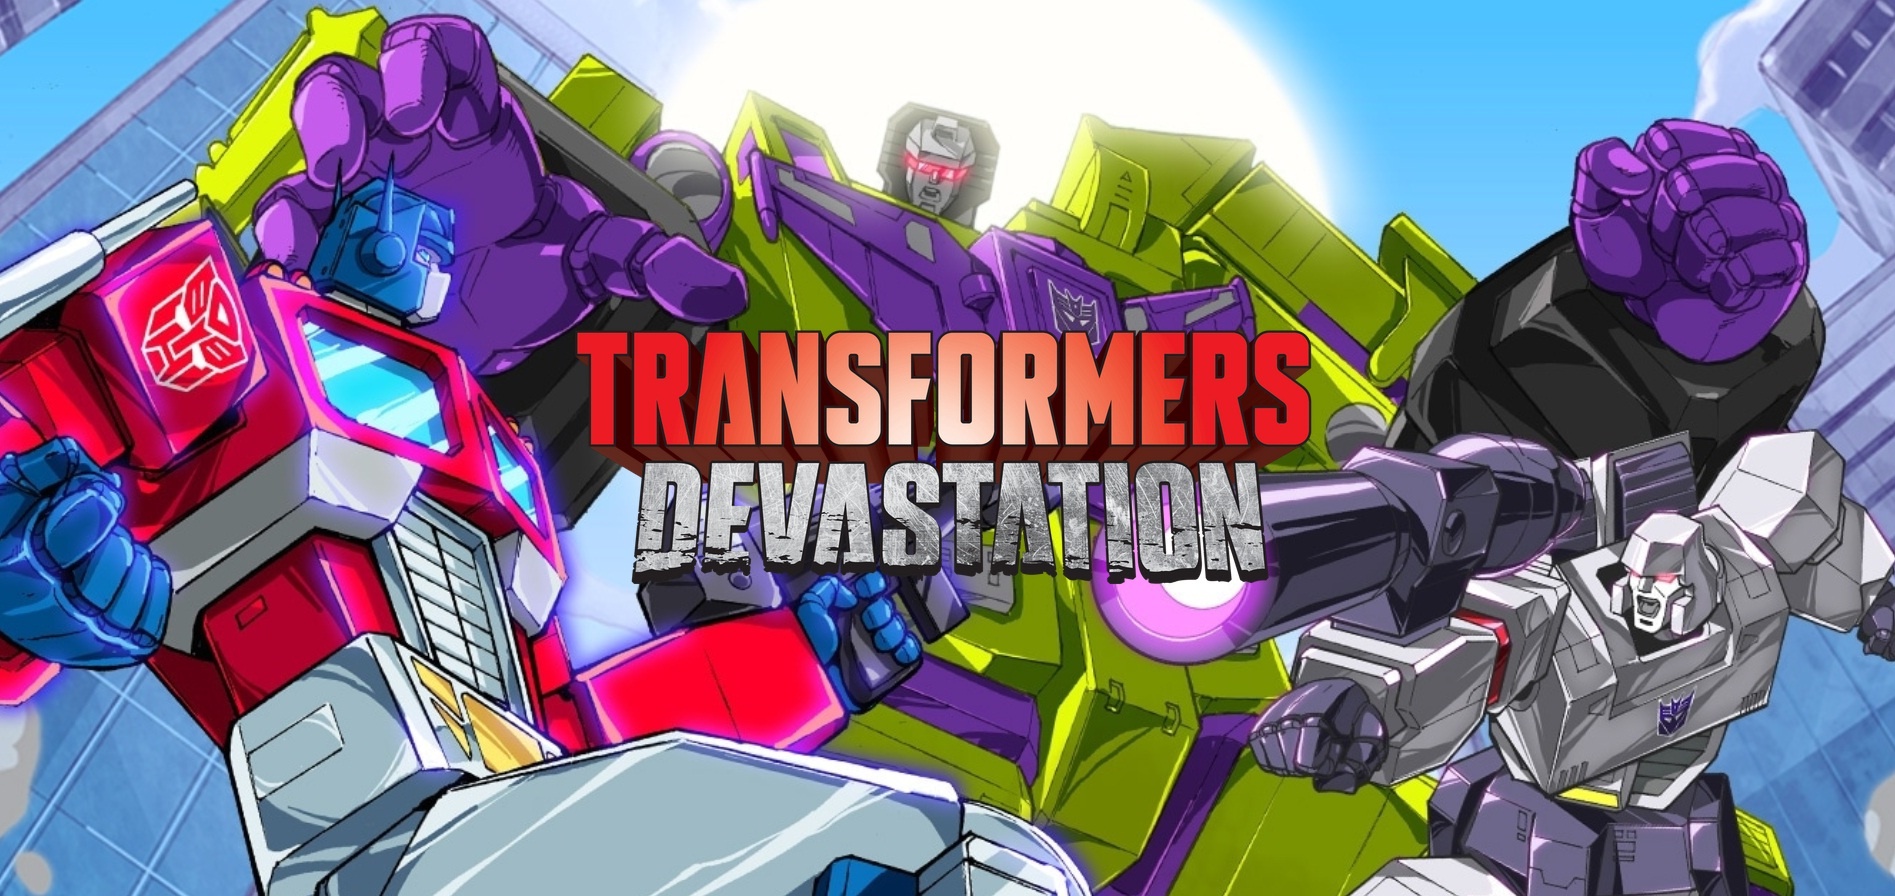 [Gamescom 2015] Transformers Devastation